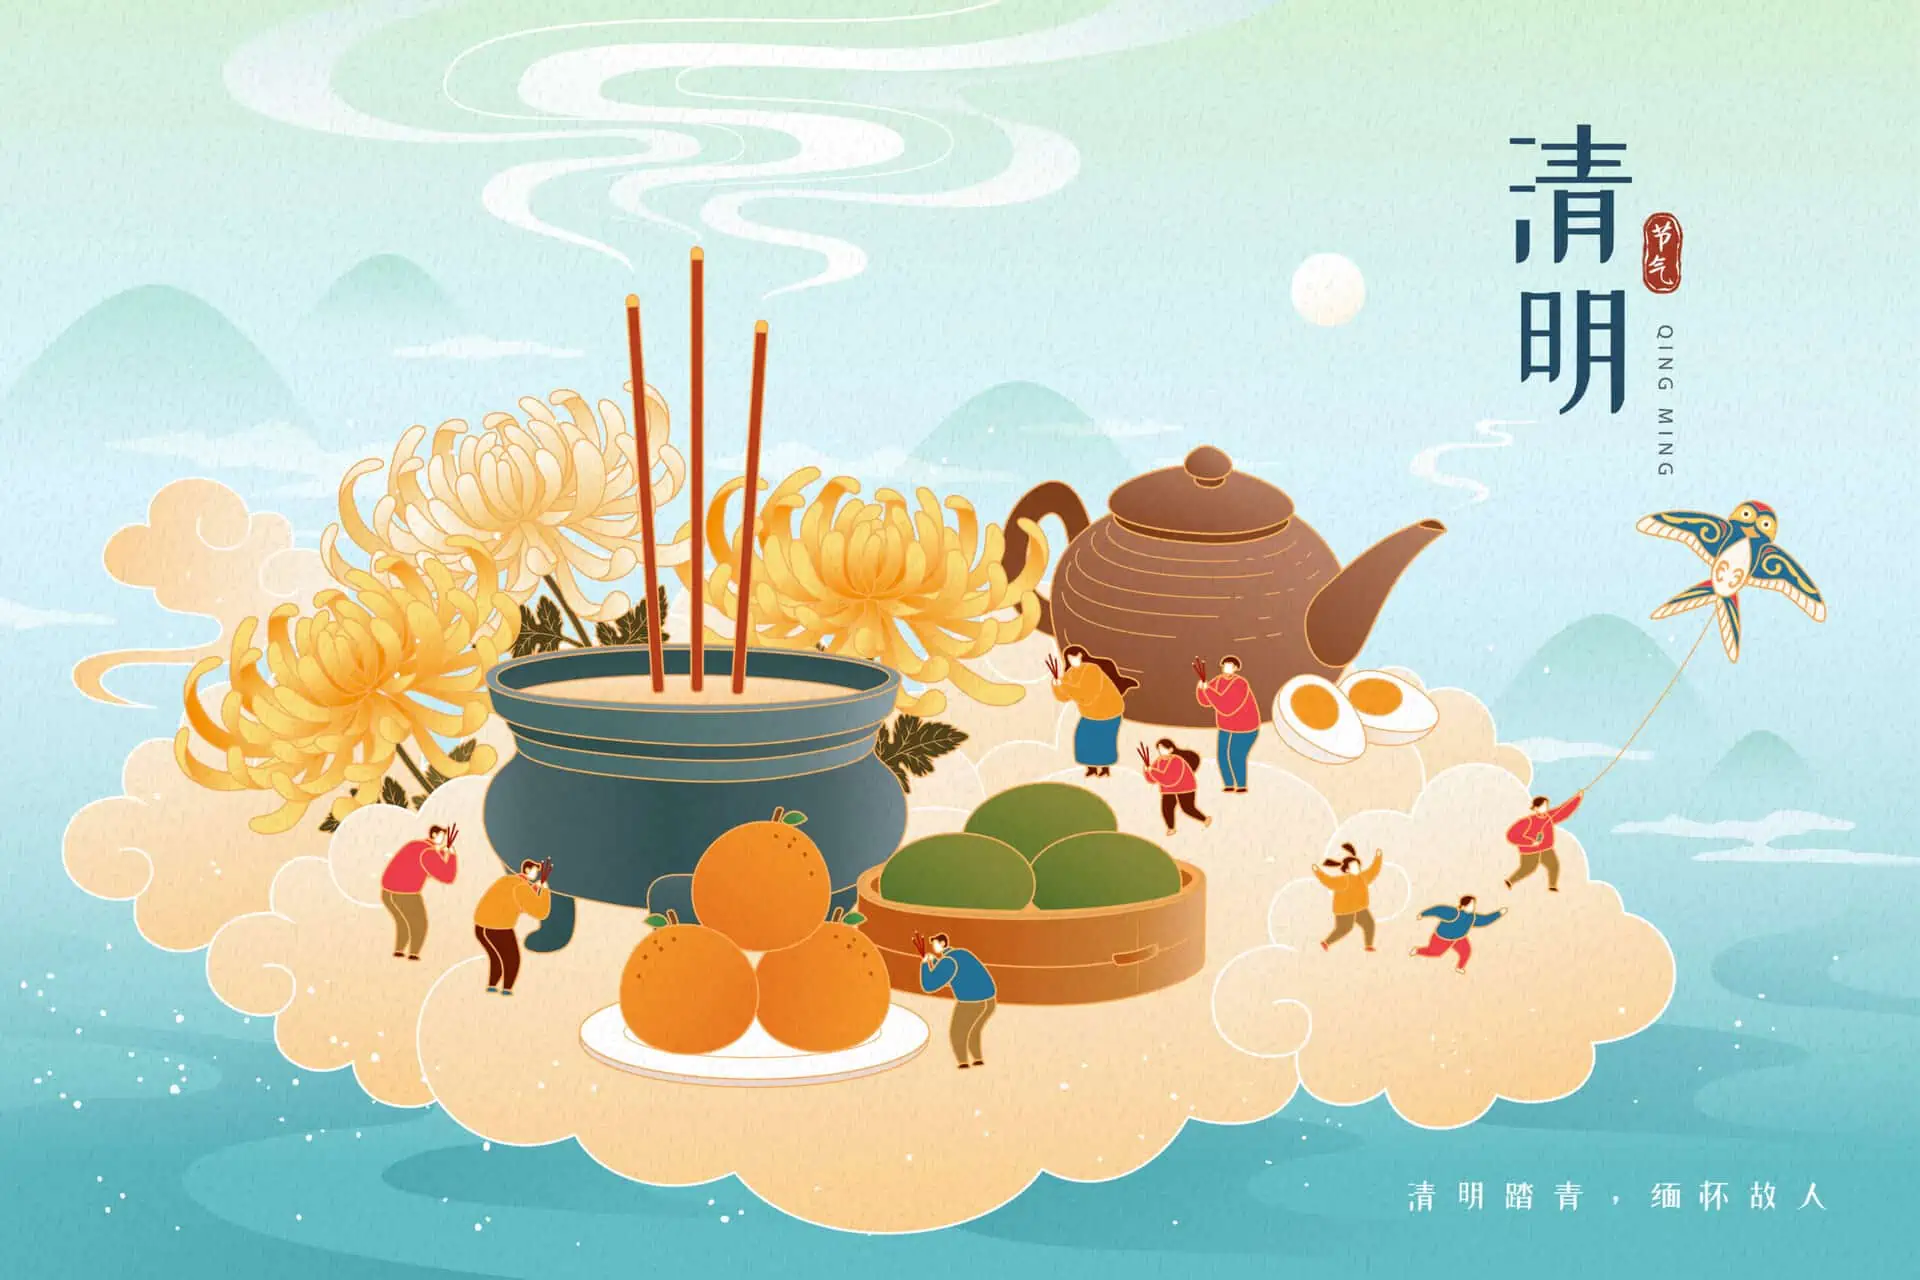 Kiinan kulttuuriperinteet: Qingming-festivaali